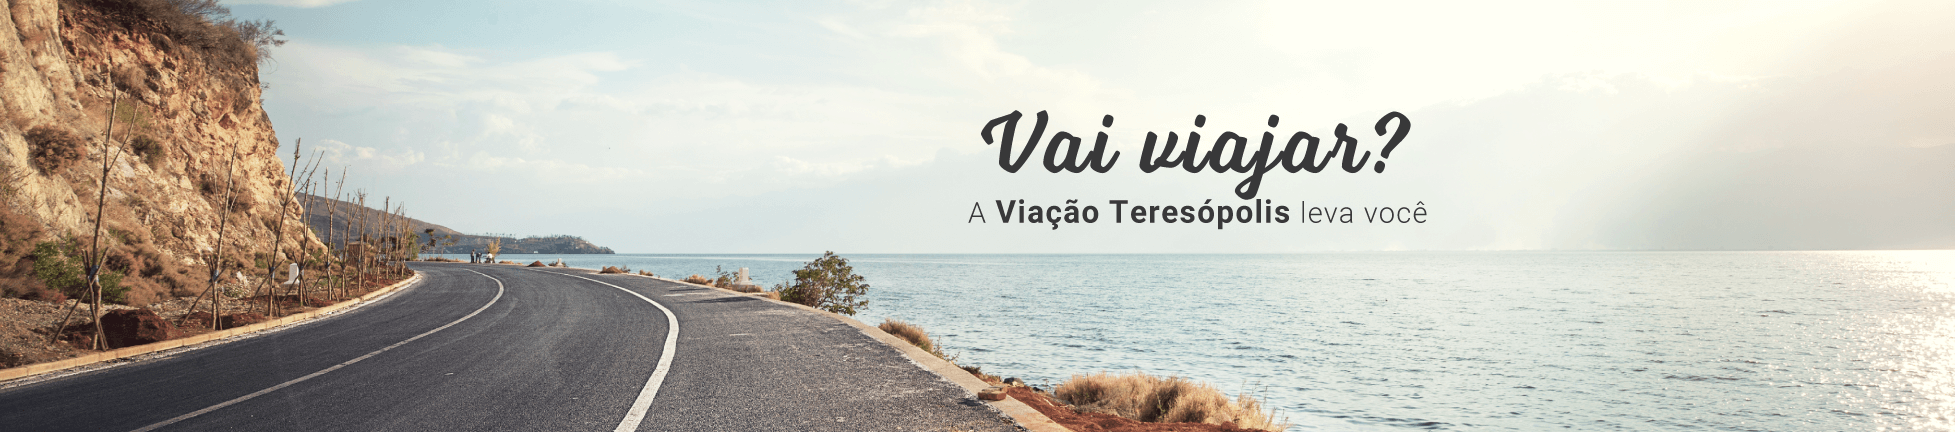 (c) Viacaoteresopolis.com.br